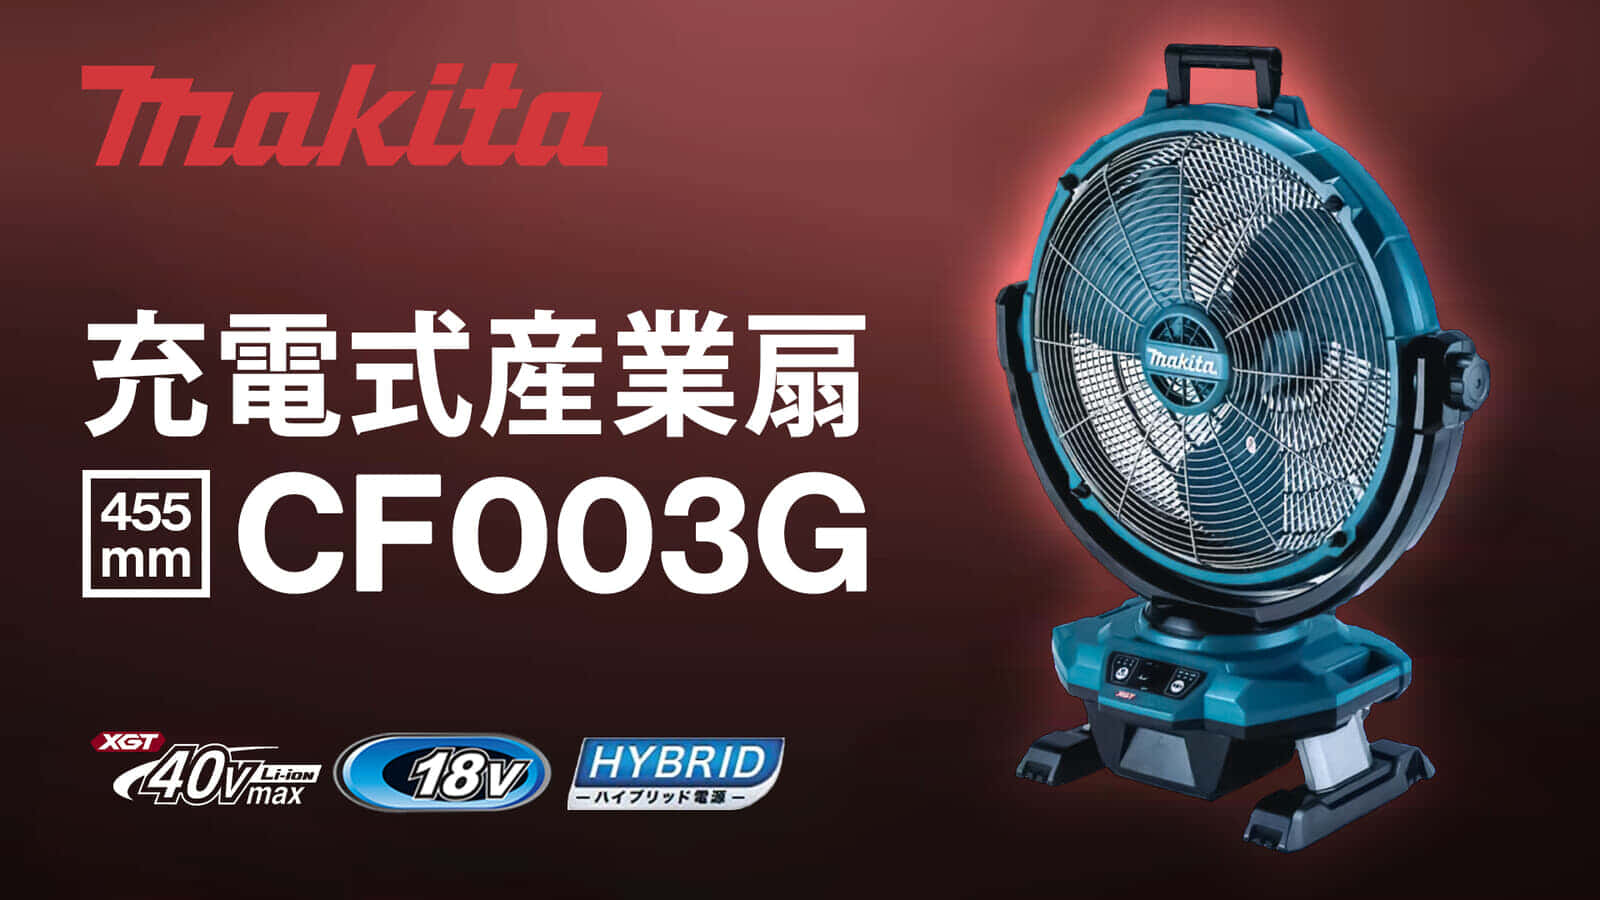 マキタ CF003G 充電式産業扇を発売、羽根径450mmの大風量モデル